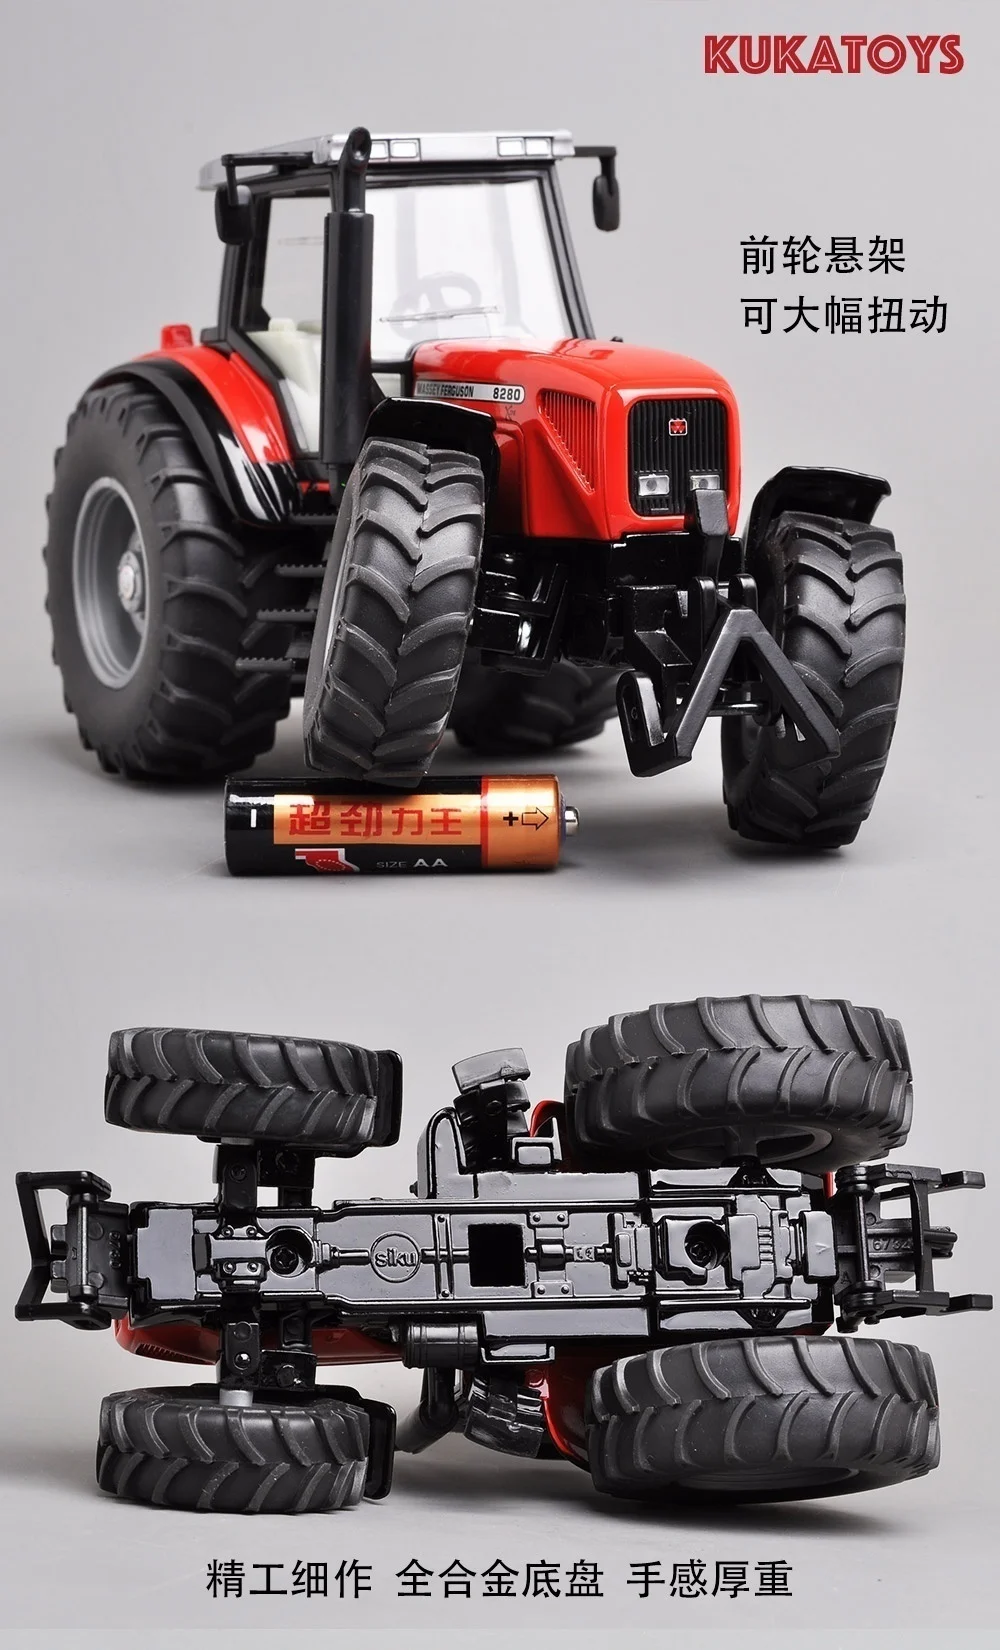 Немецкая Siku шотландская Внешняя торговля 3251 сплав инженерный сельскохозяйственный Транспорт модель 1:32 трактор игрушка подарок игрушки для детей